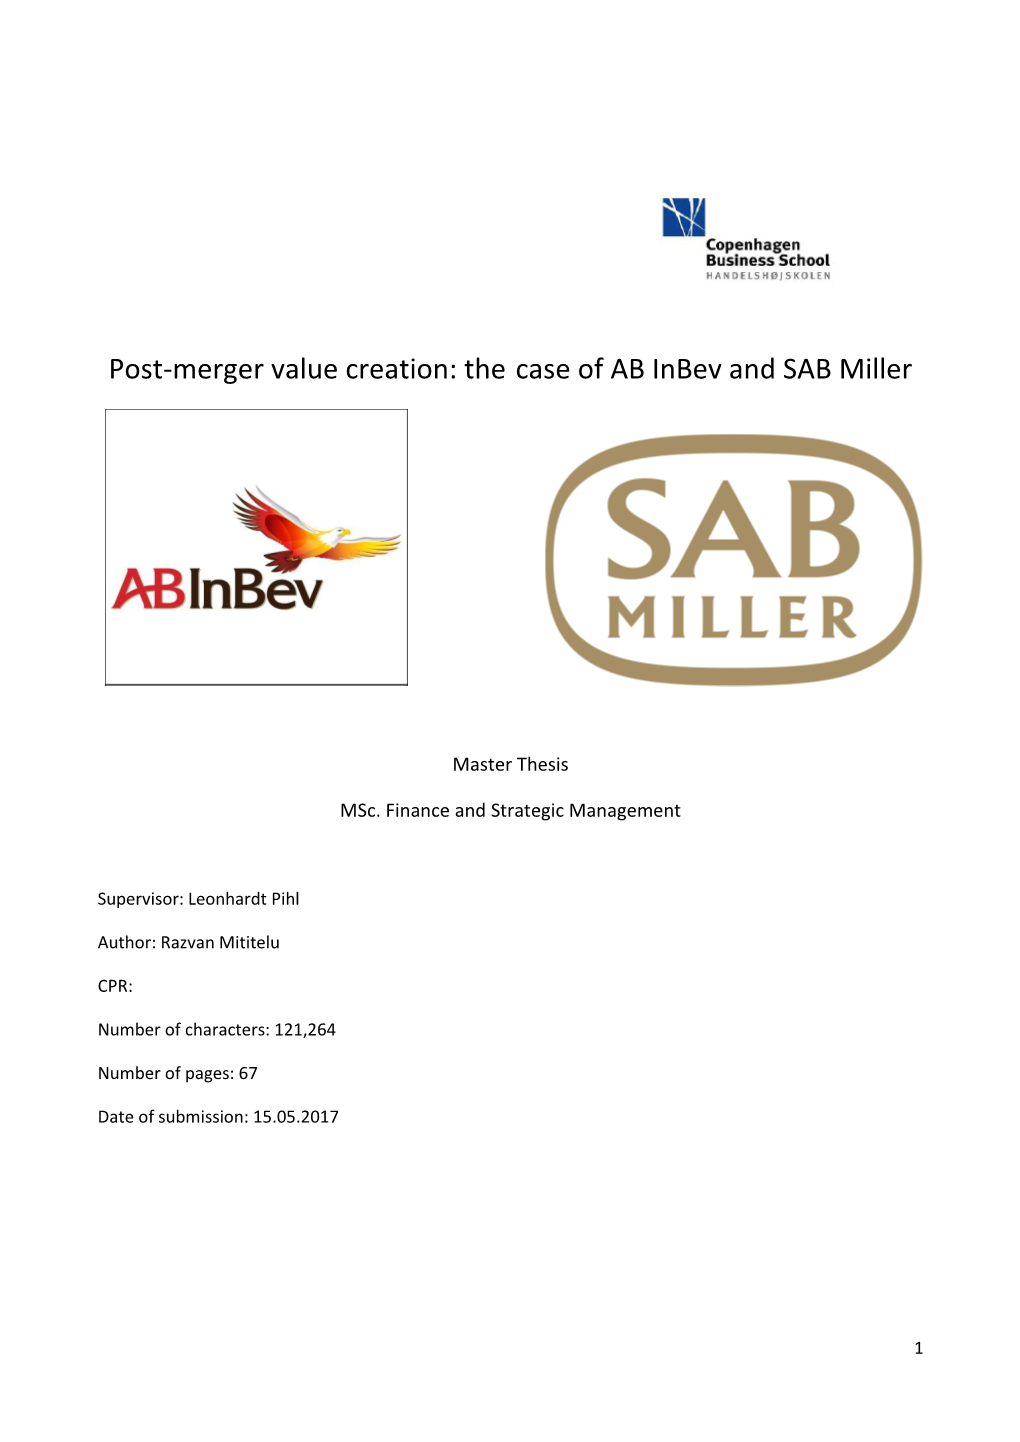 Post-Merger Value Creation: the Case of AB Inbev and SAB Miller